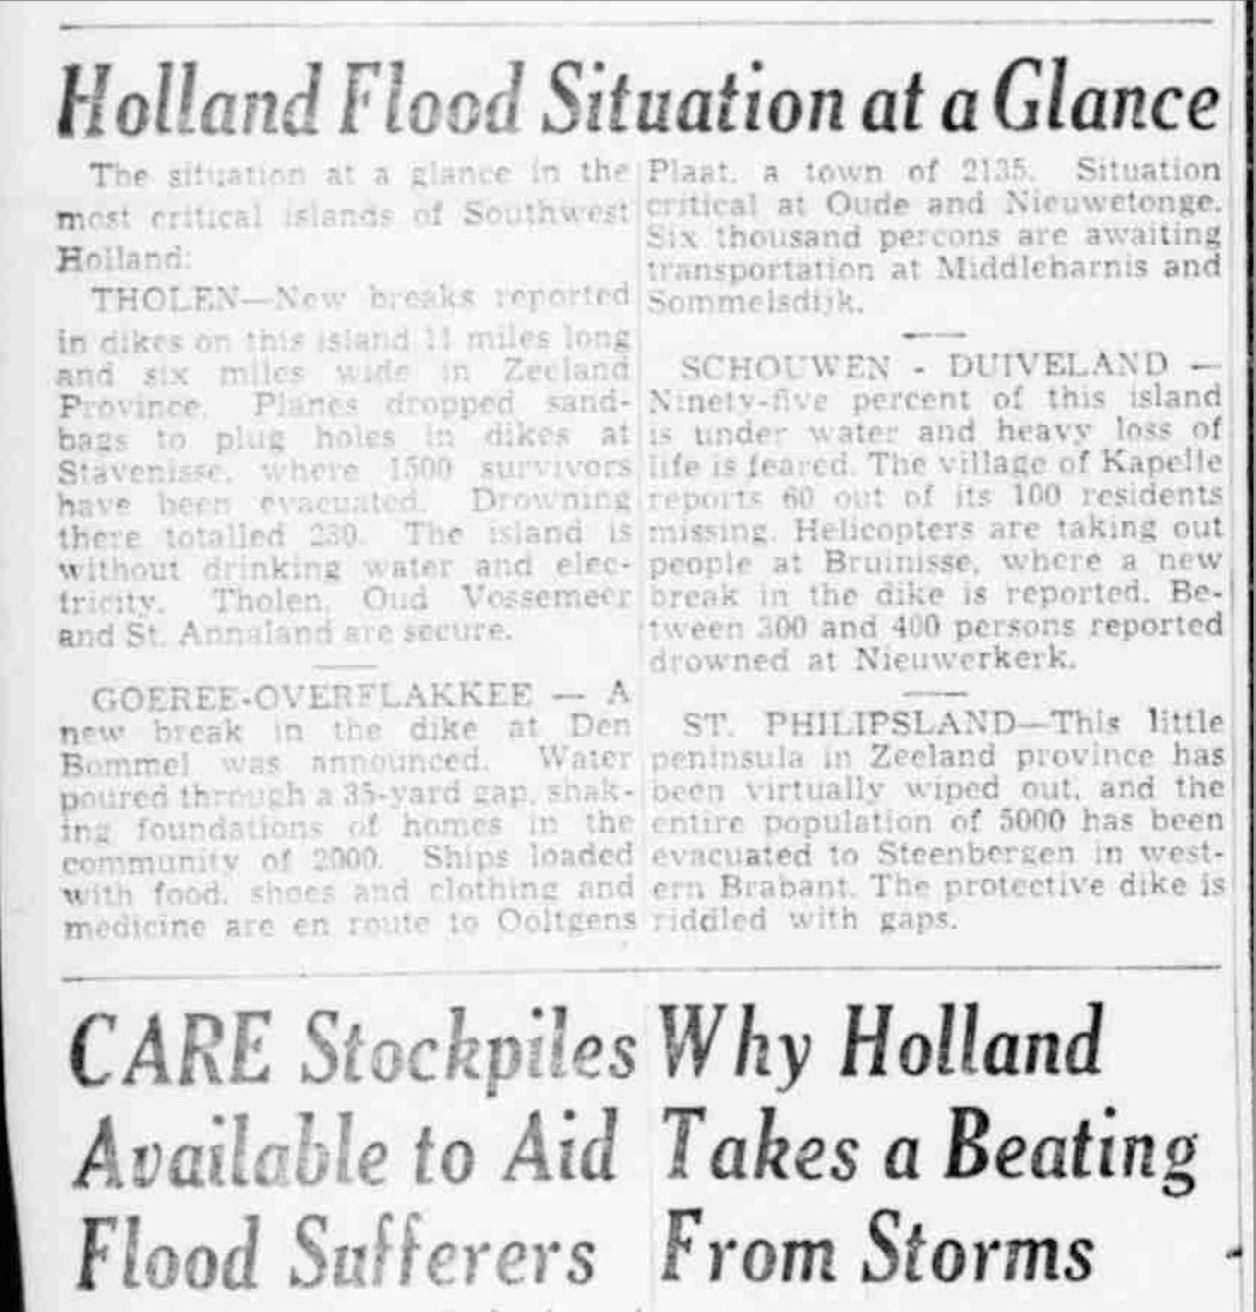 Watersnoodramp in Nederland beschreven in The Boston Globe, 4 februari 1953. Bron: MyHeritage SuperSearch